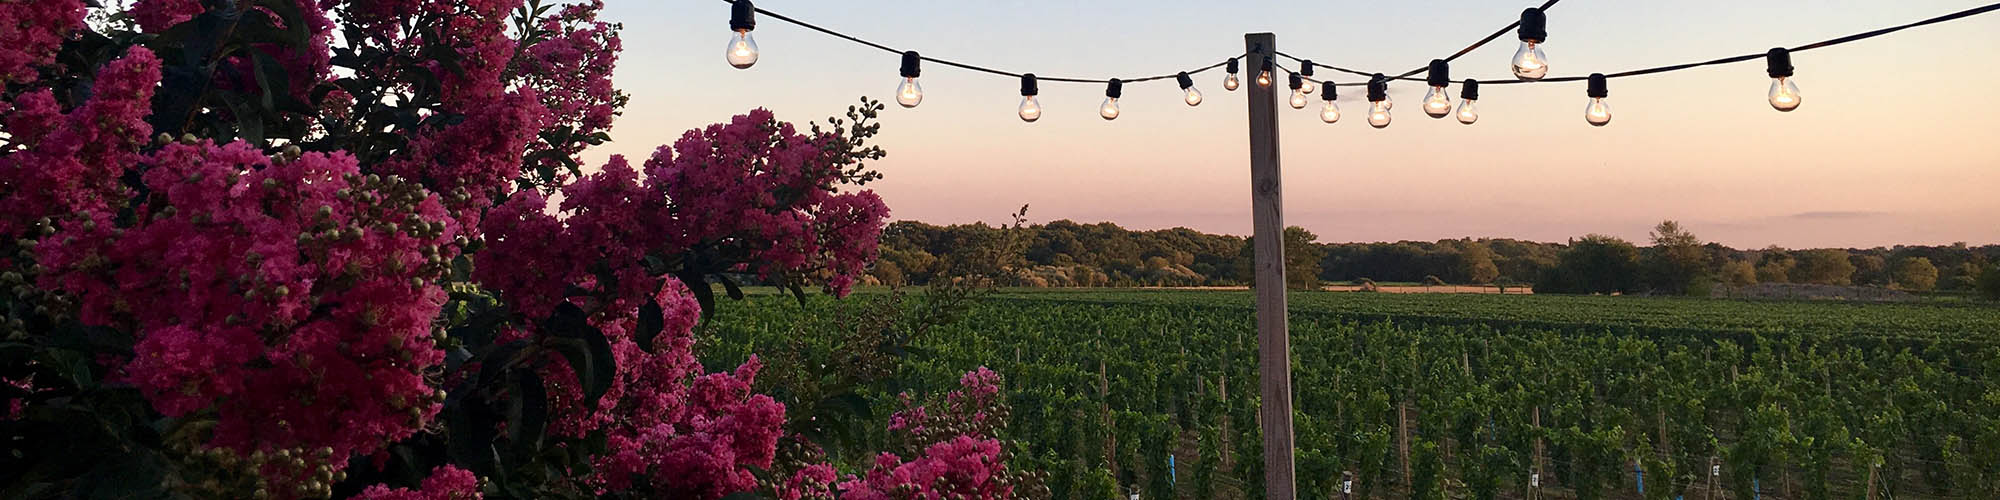 Long Island Winery Sunset